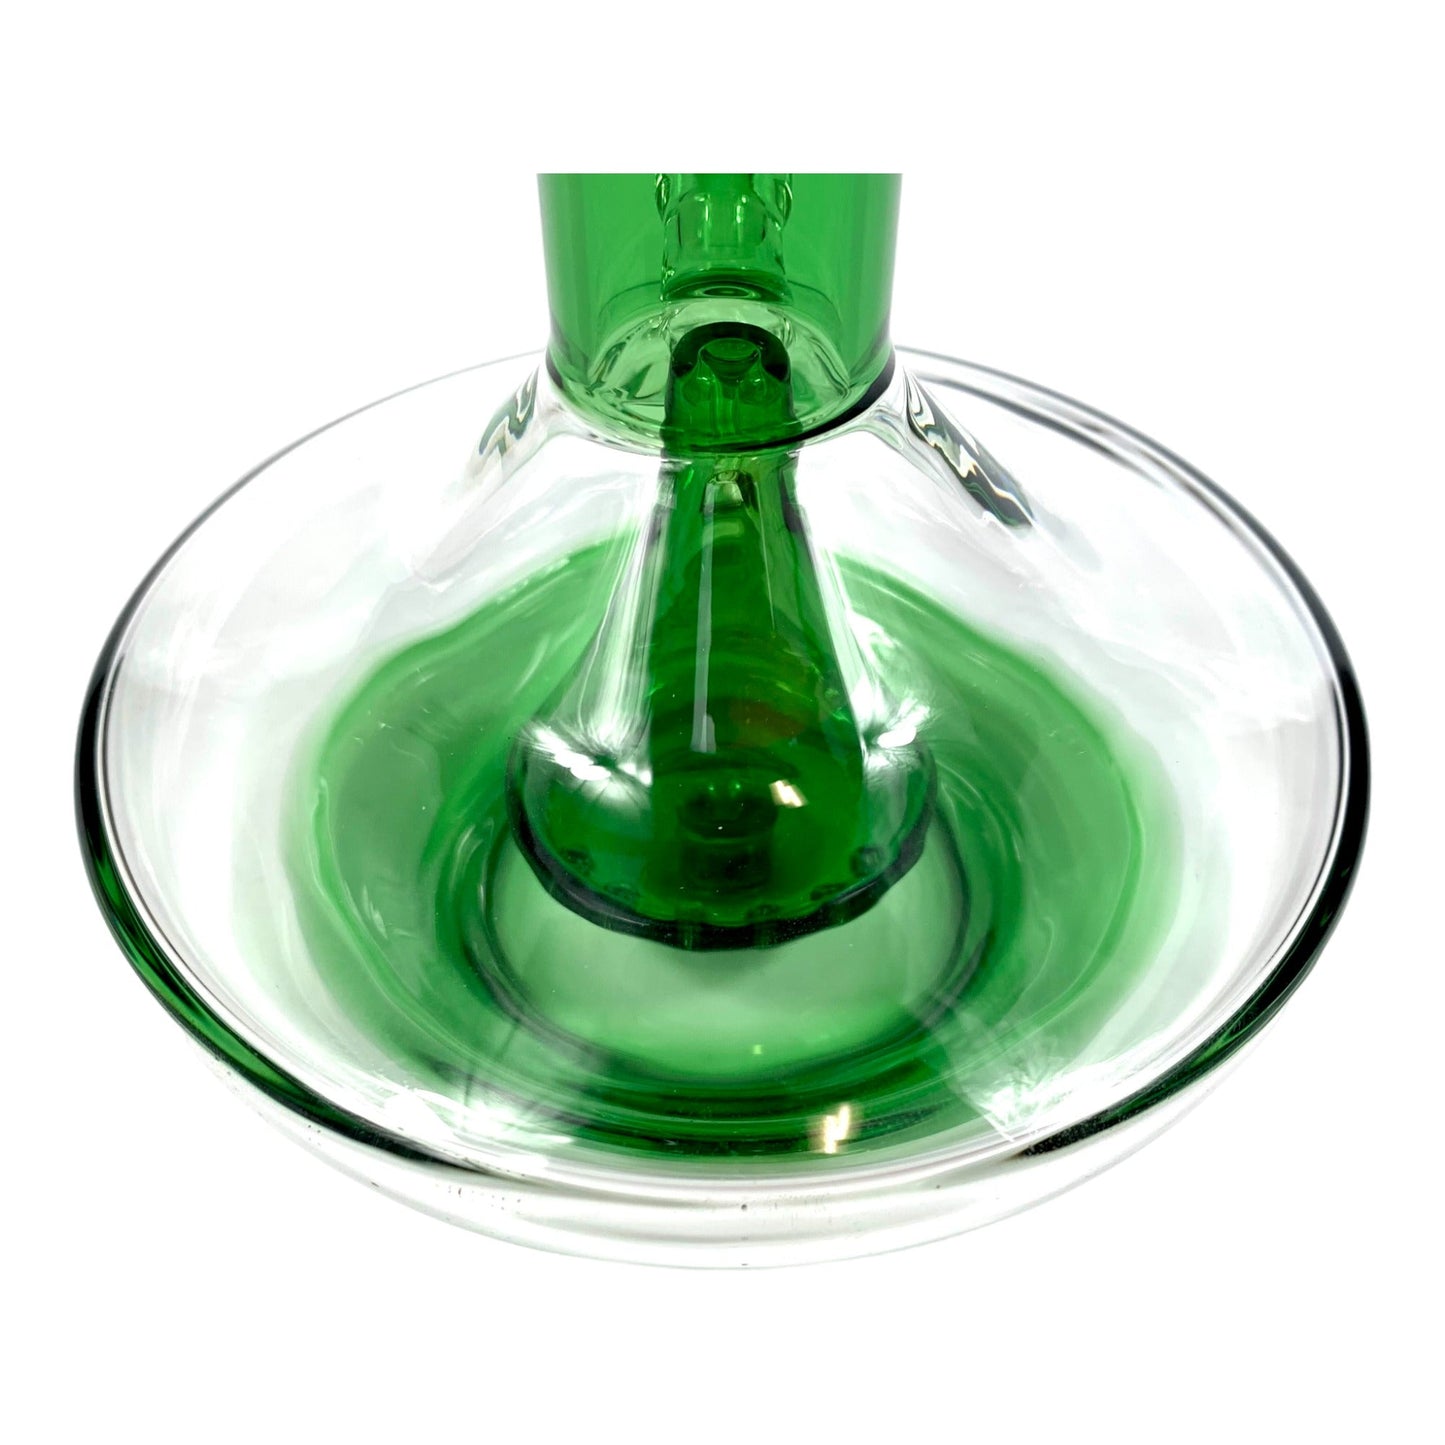 Phoenix Glass UFO Bong 20cm Green - The Bong Baron